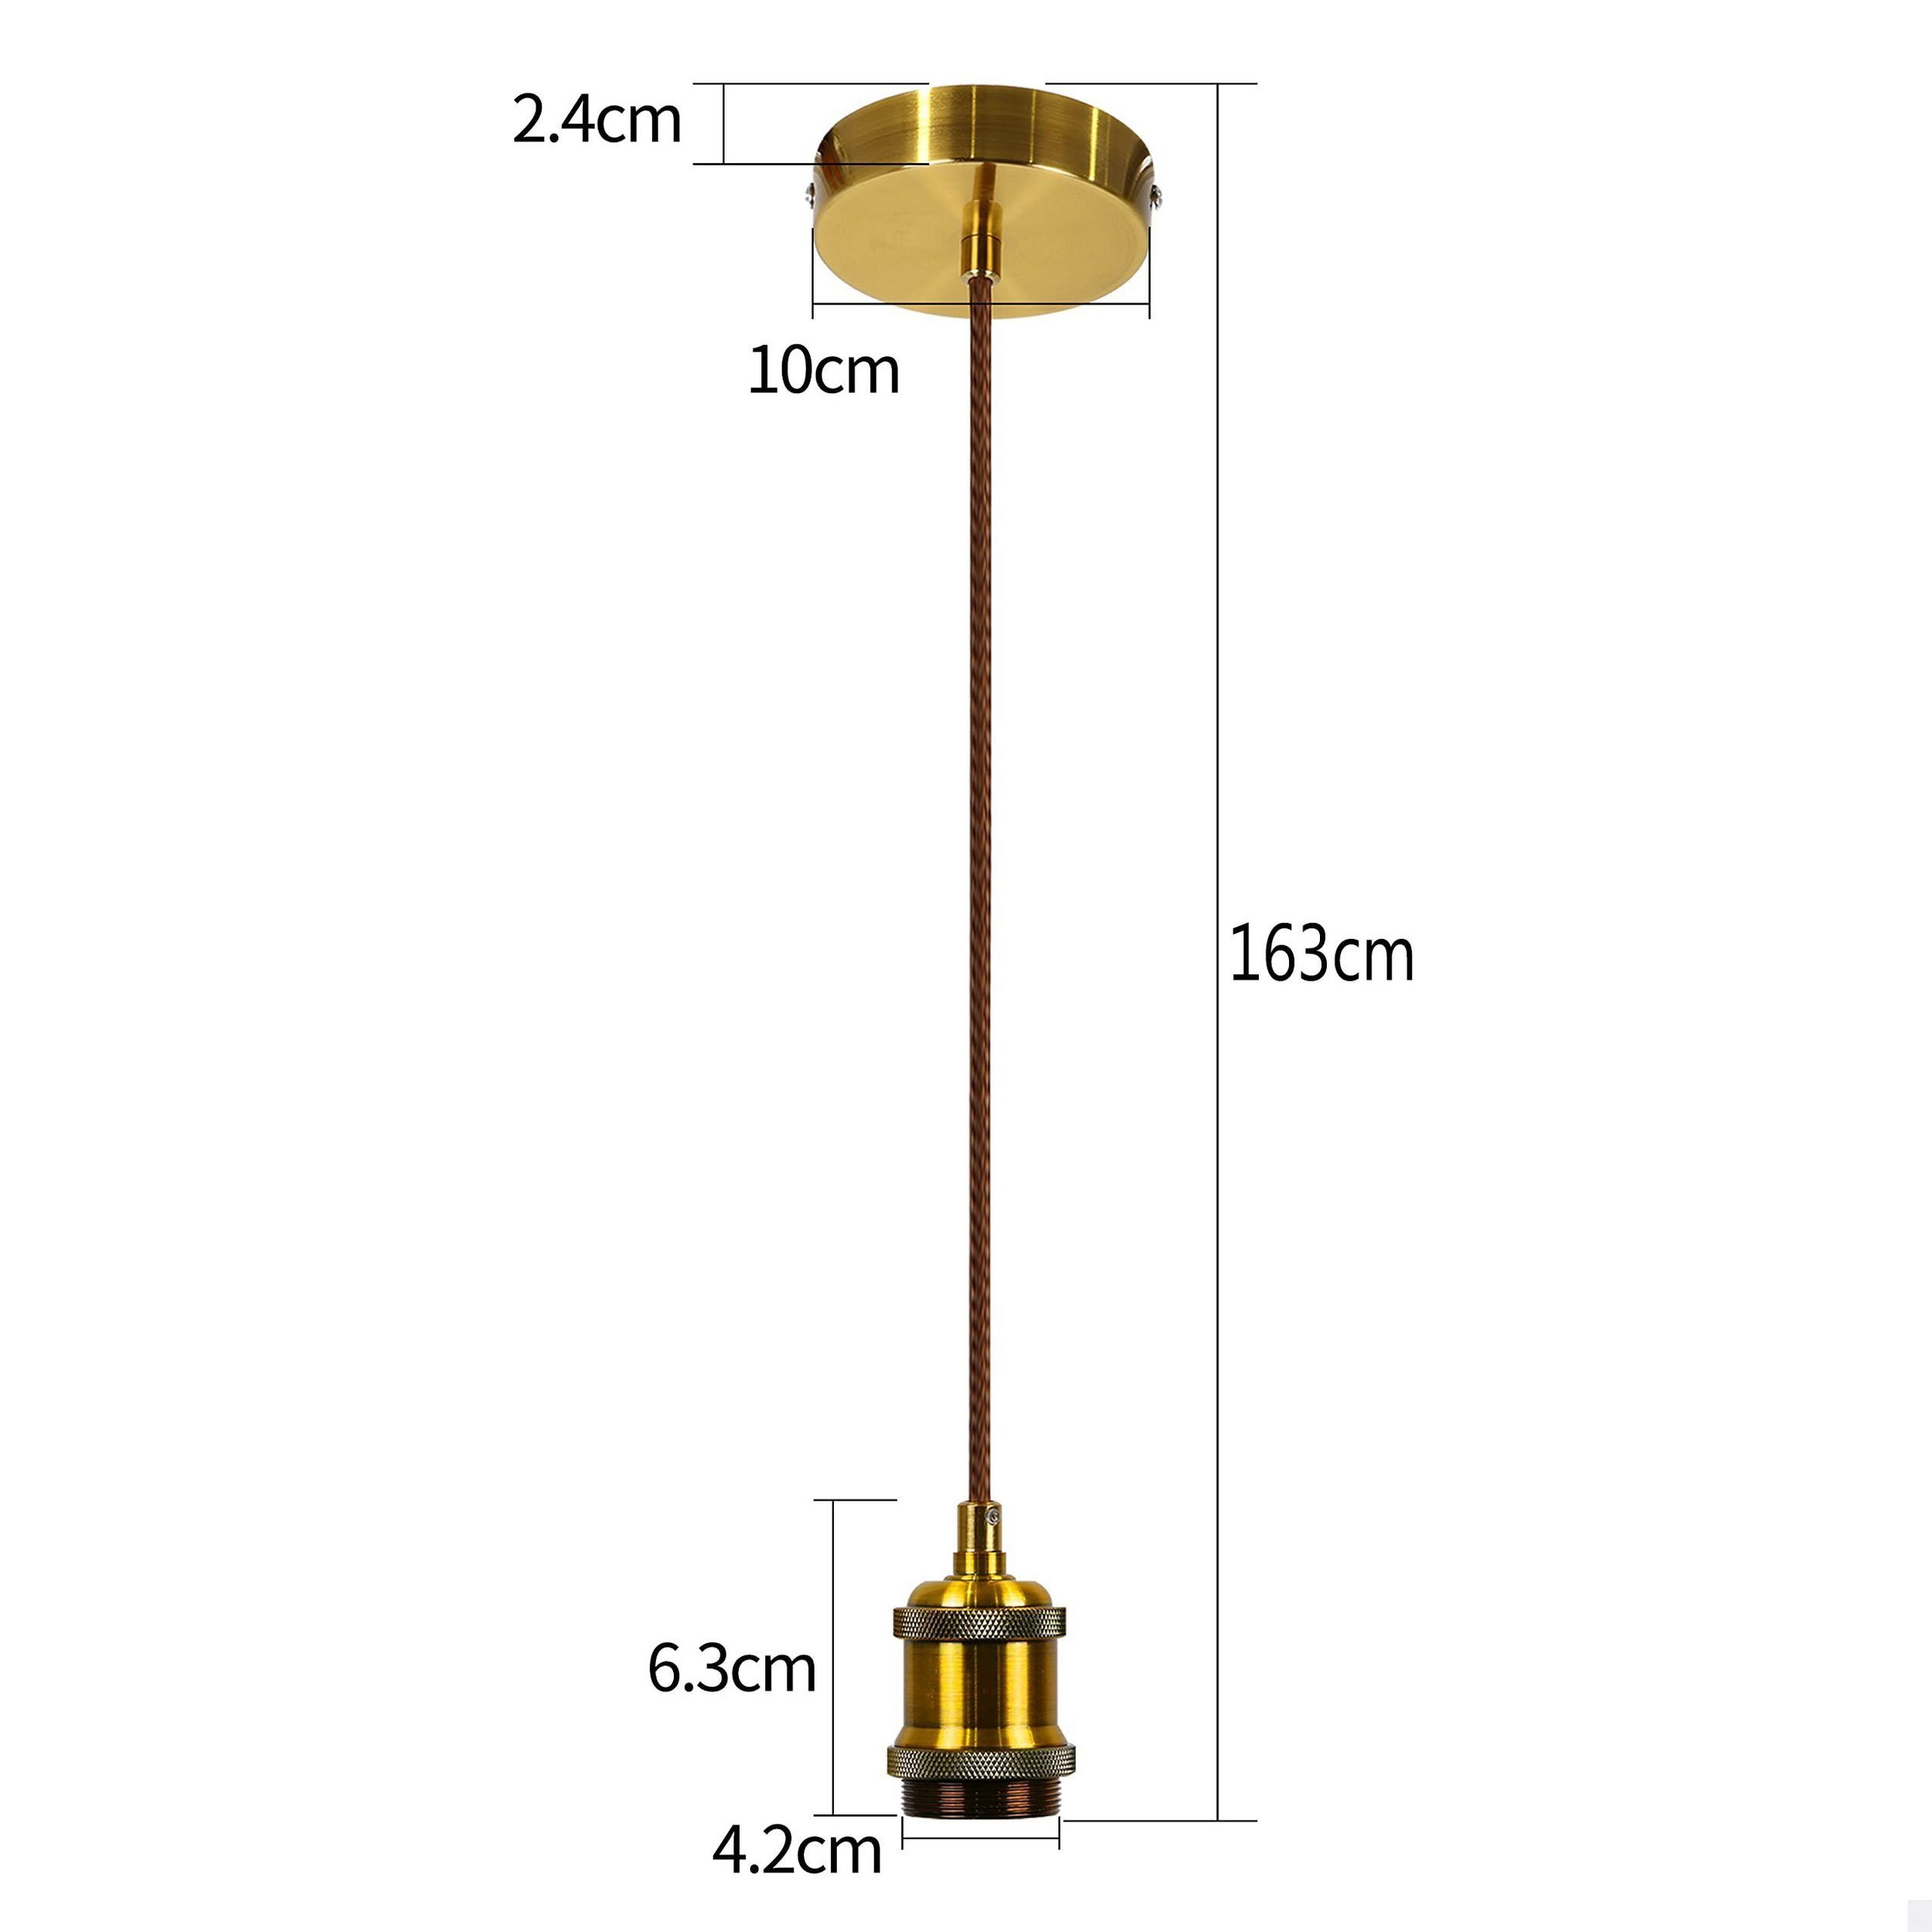 Nettlife Lampenfassung E27 mit Gold Vintage Schnurpendel 1.3M Edison Kabel Hängefassung